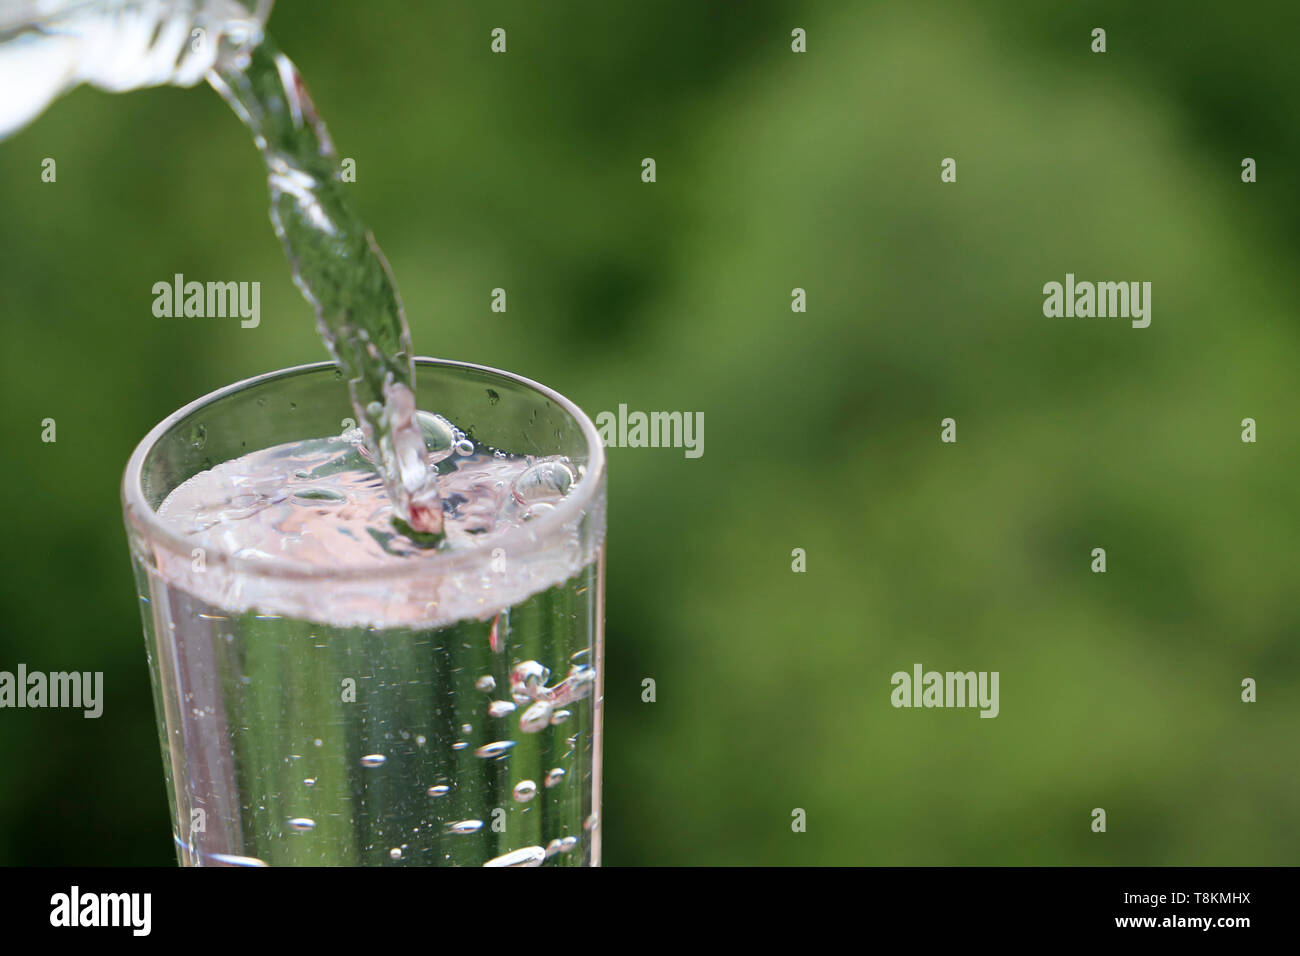 L'eau se déverse d'une bouteille en verre sur la nature de fond vert. Notion de santé et de fraîcheur, la soif, la purification de l'eau, de l'écologie Banque D'Images